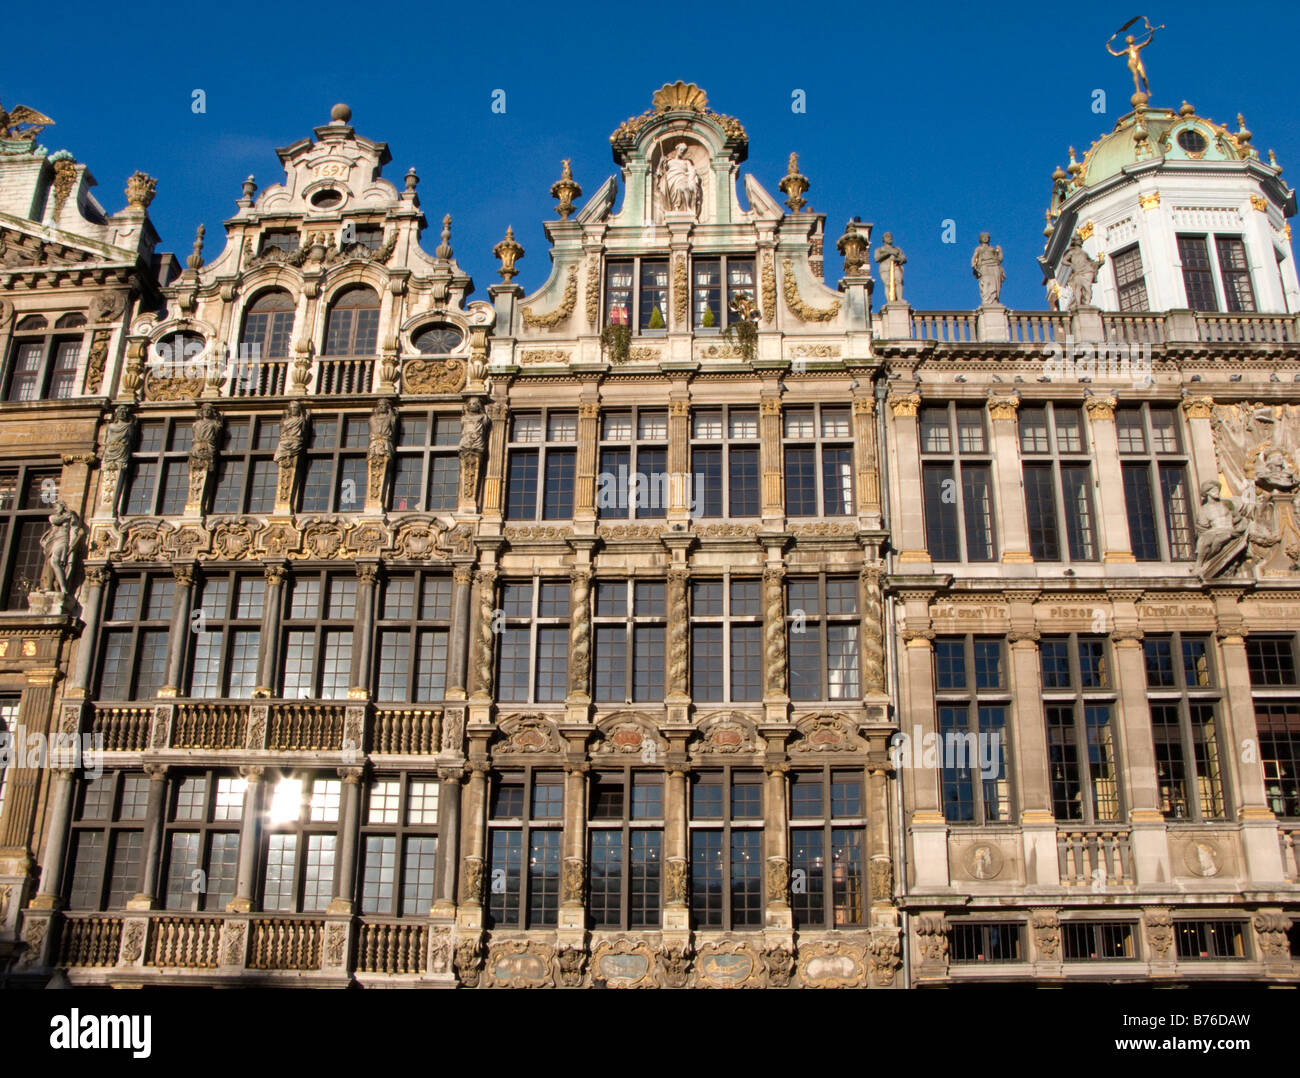 Façades de vieux bâtiments historiques dans célèbre Grand Place Bruxelles Belgique 2009 Banque D'Images